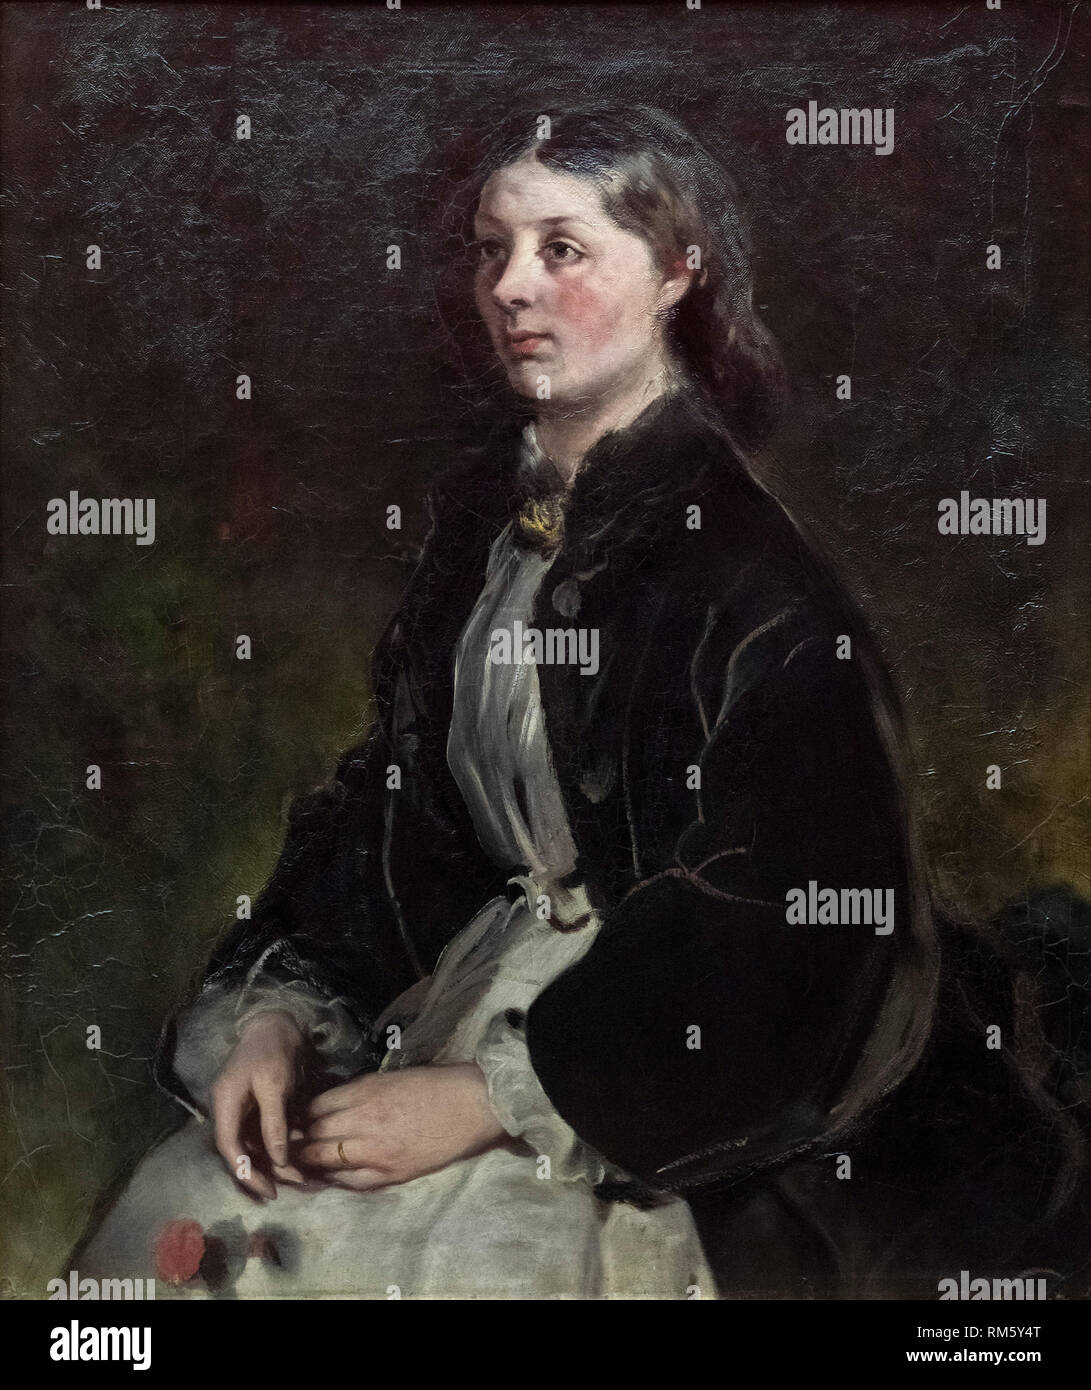 Ferdinand von Rayski (1806-1890), Portrait of Baroness Christina von Schönberg, ca. 1864-1868. Alte Nationalgalerie, Berlin, Germany. Stock Photo